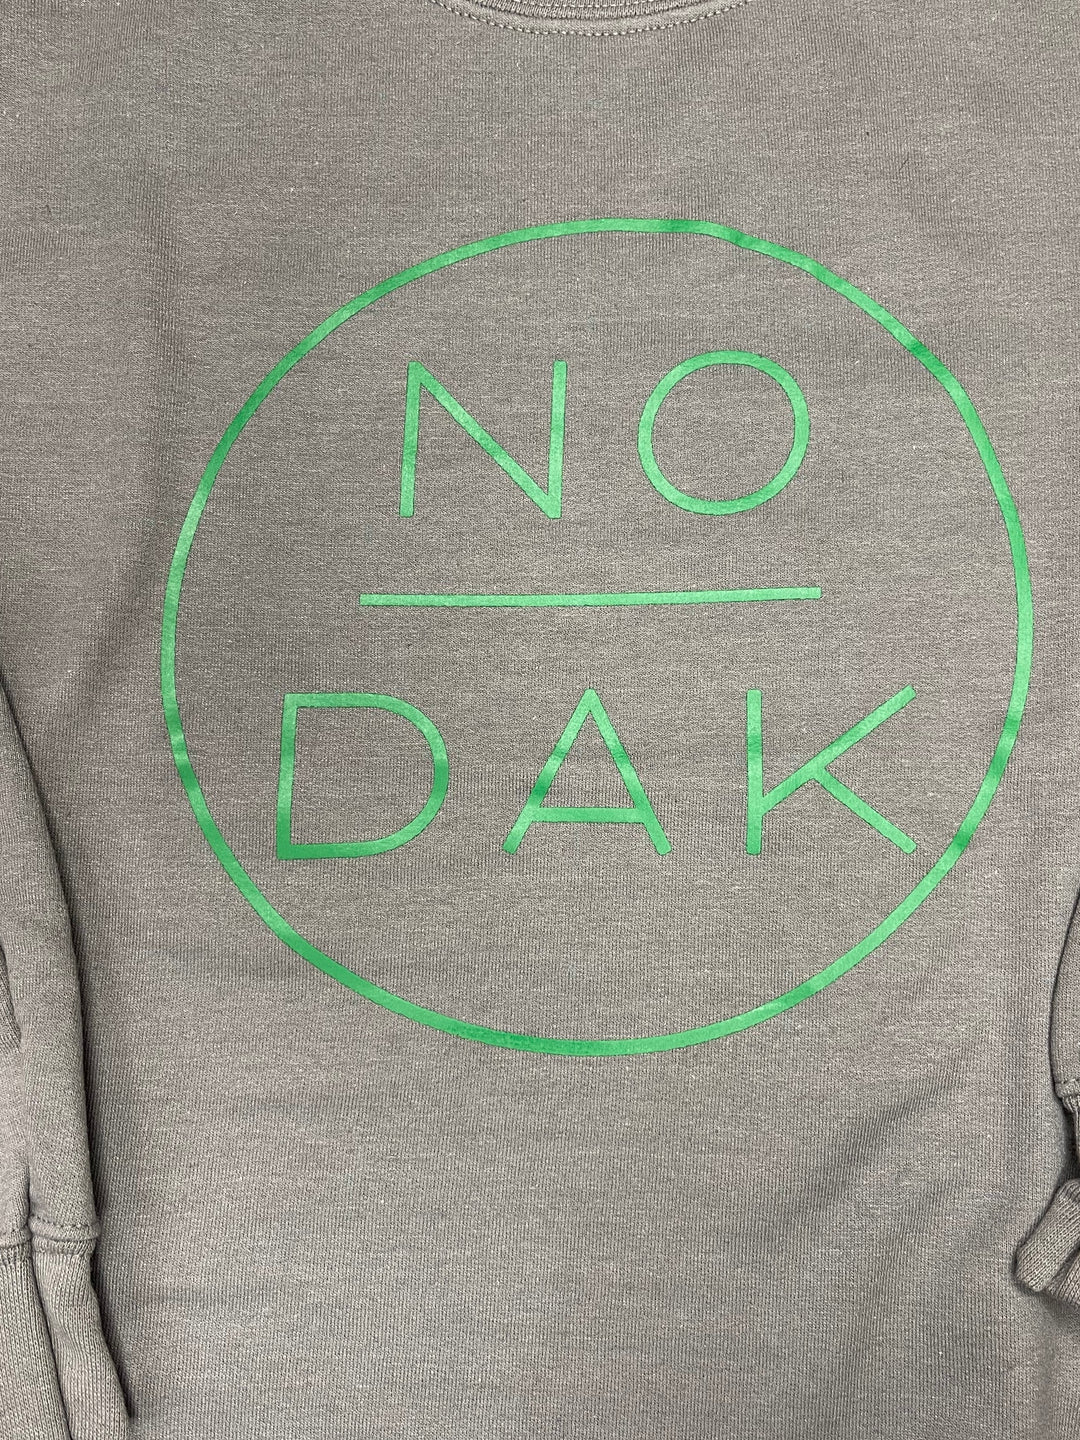 NoDak Charcoal Grey Crew Neck